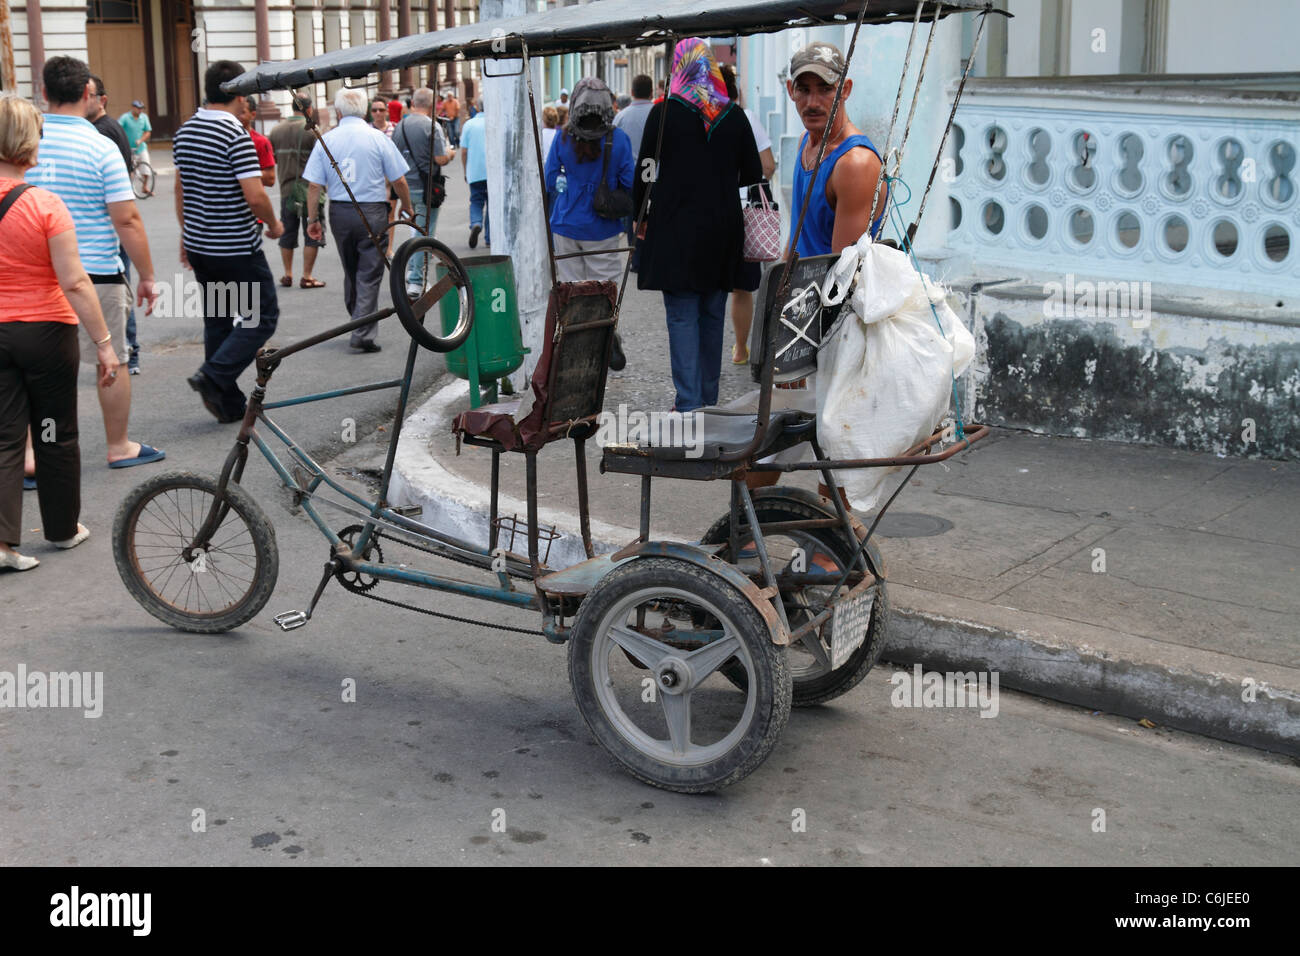 L'auto a fait trois vélos de roues et sur l'homme de Cuba Street. Le centre-ville de Viñales, Pinar del Rio, Cuba, octobre 2010 Banque D'Images